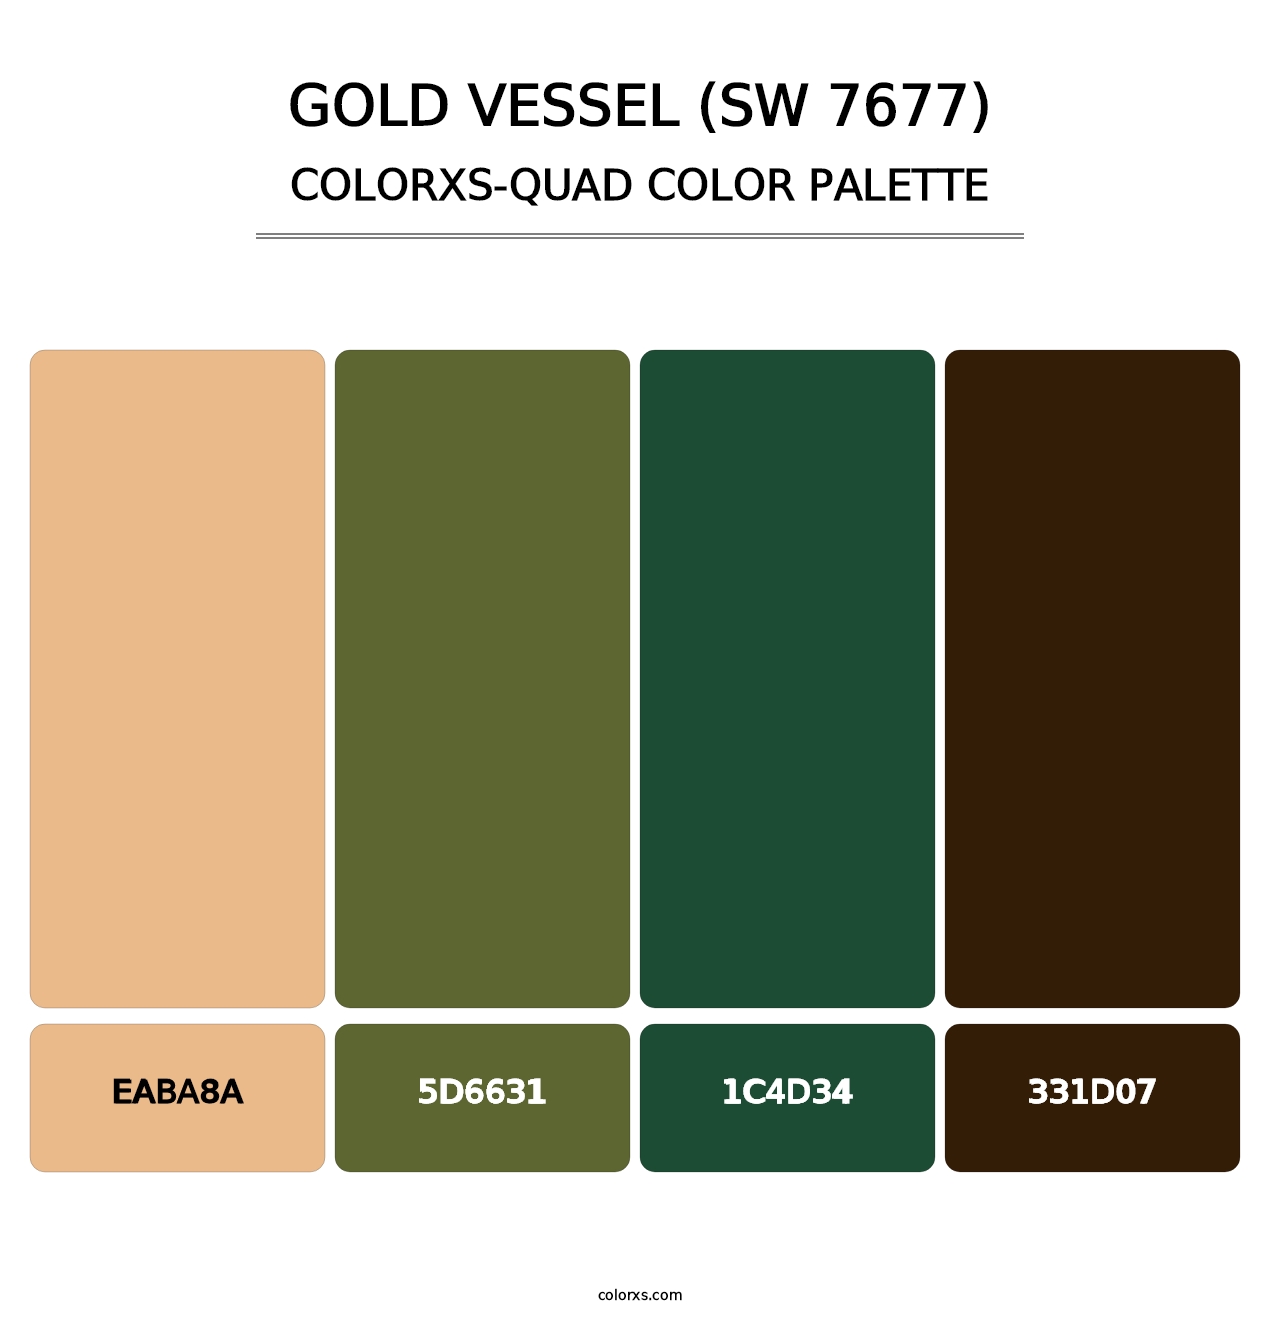 Gold Vessel (SW 7677) - Colorxs Quad Palette